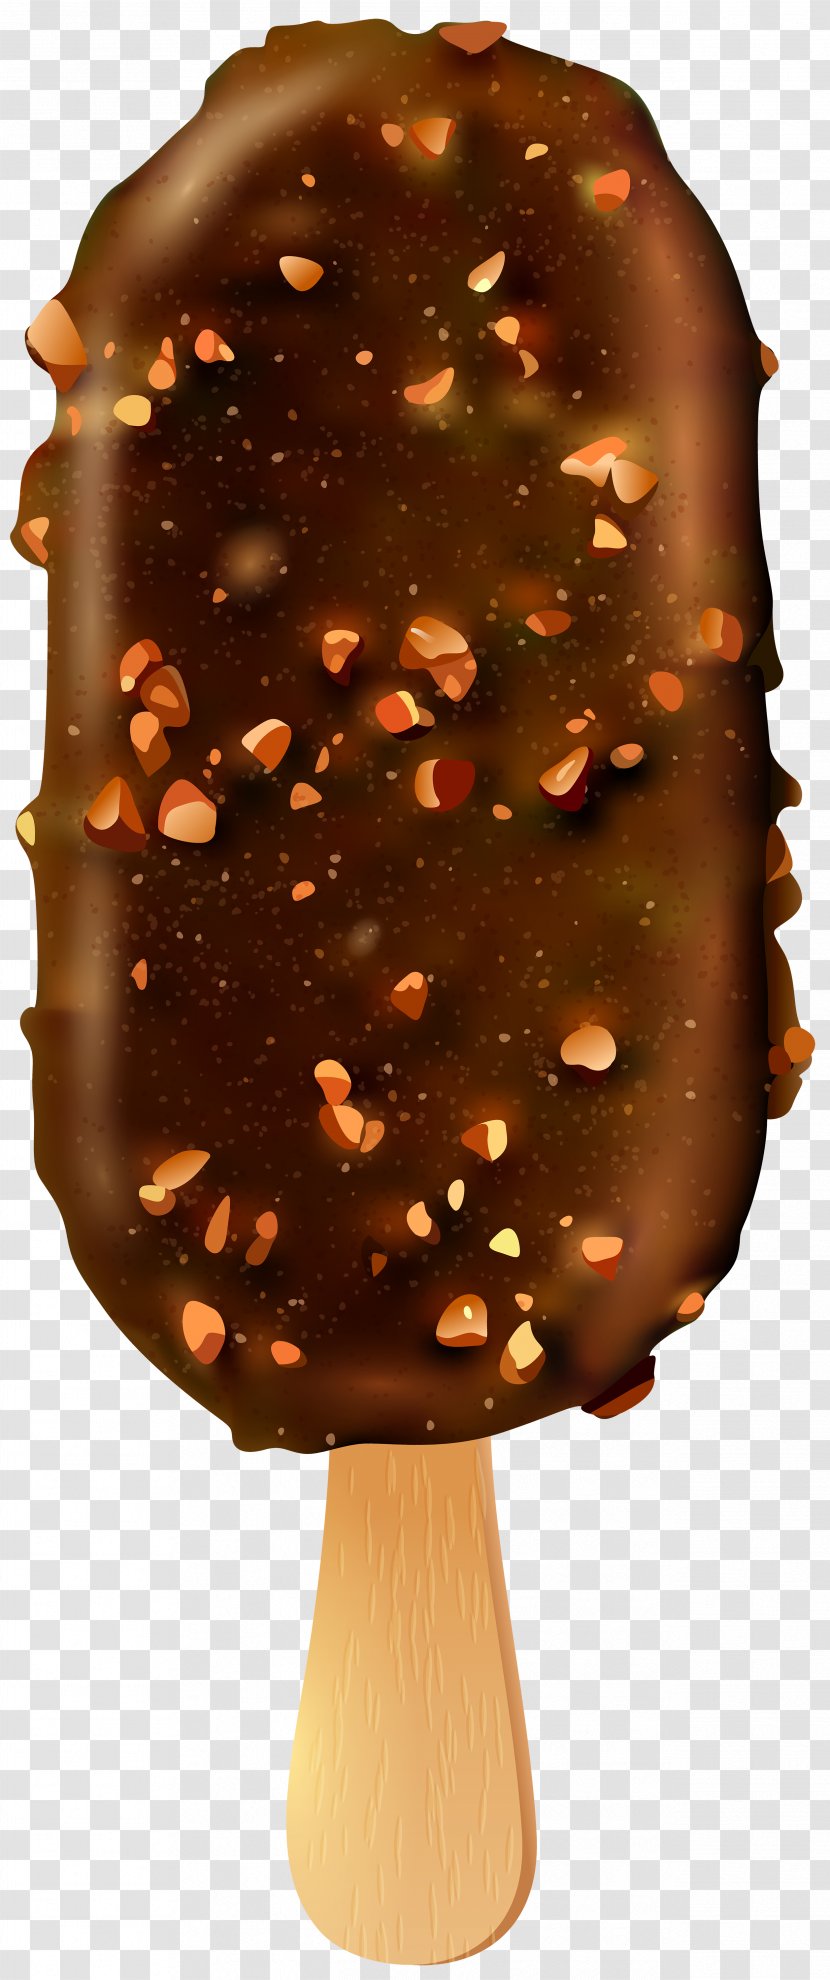 Ice Cream Cones Chocolate Pop Bar Transparent PNG